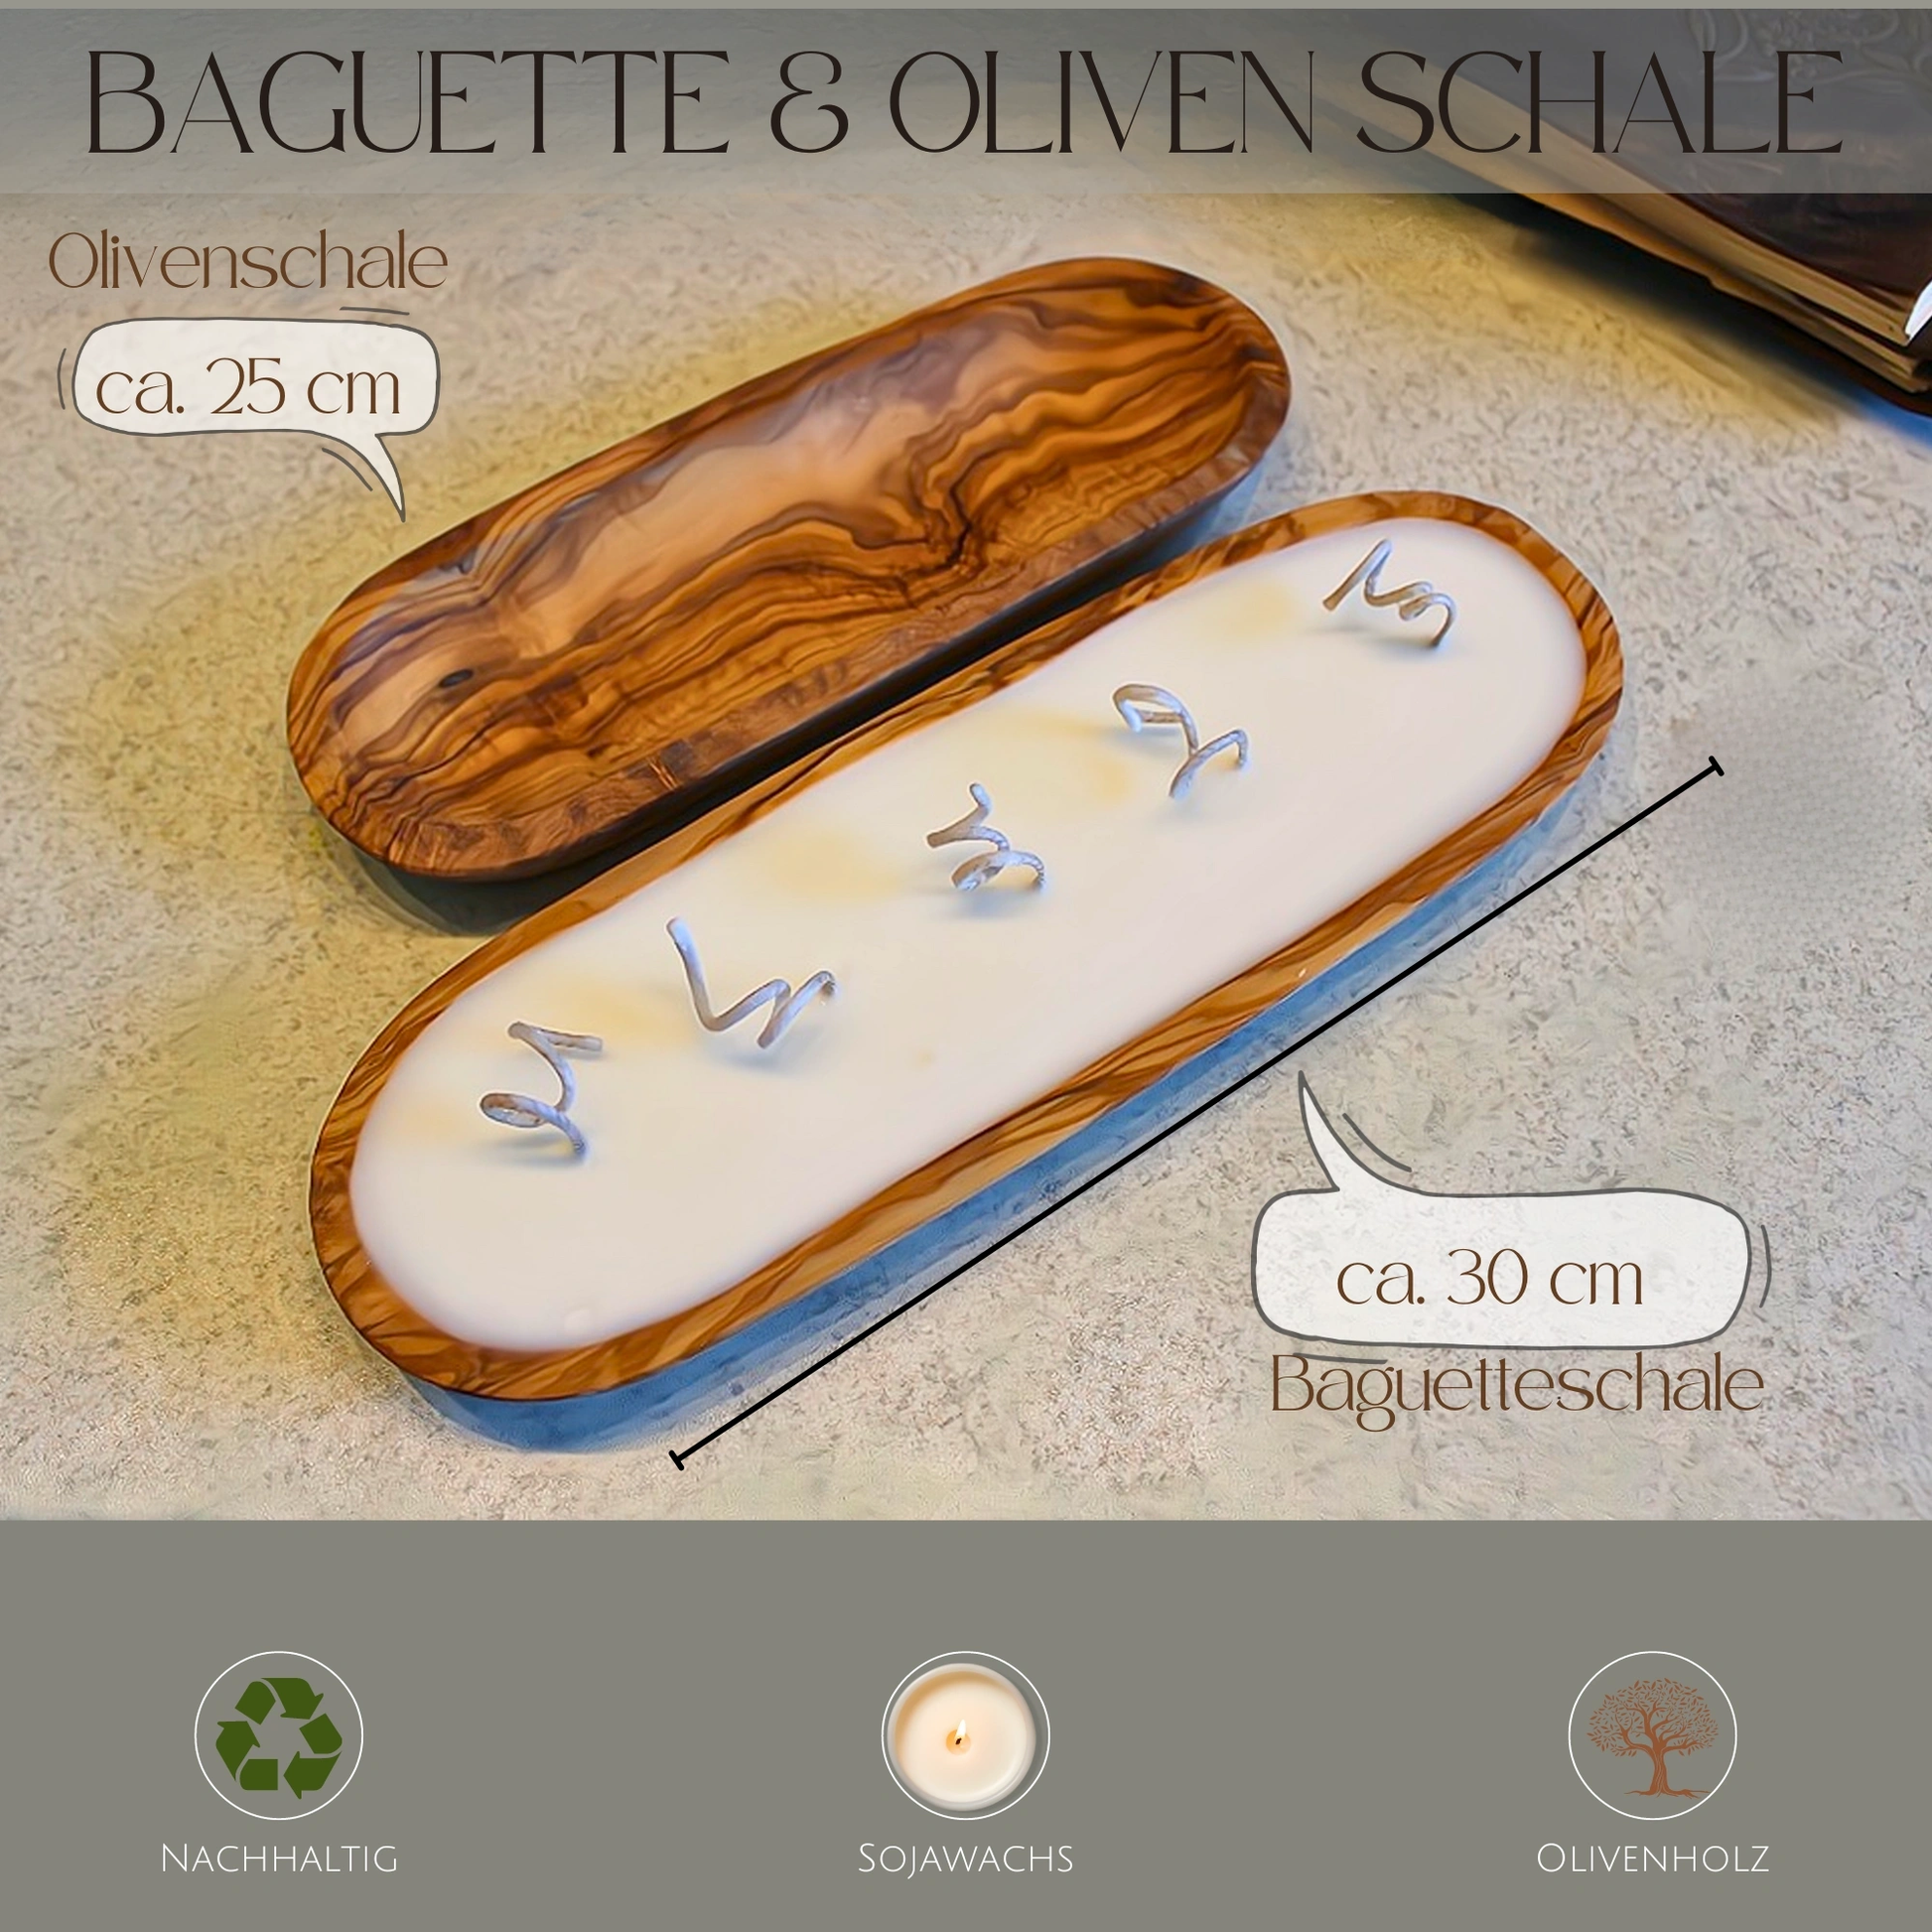 Sojawachskerze in Olivenholzschale "Baguette" 30 cm Reine Wärme